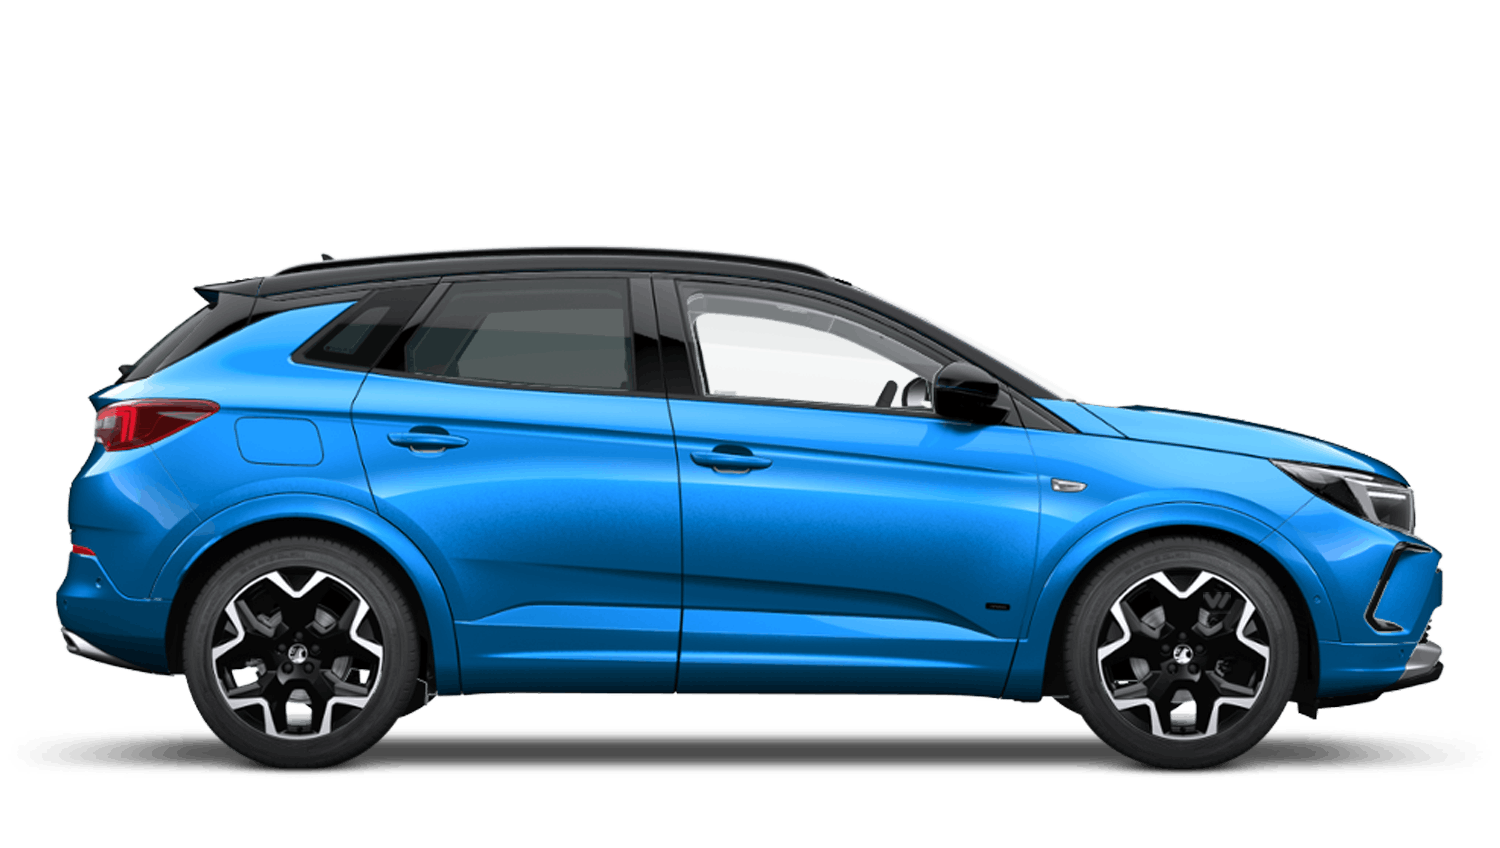 Cobalt Blue (Metallic) New Vauxhall Grandland Hybrid